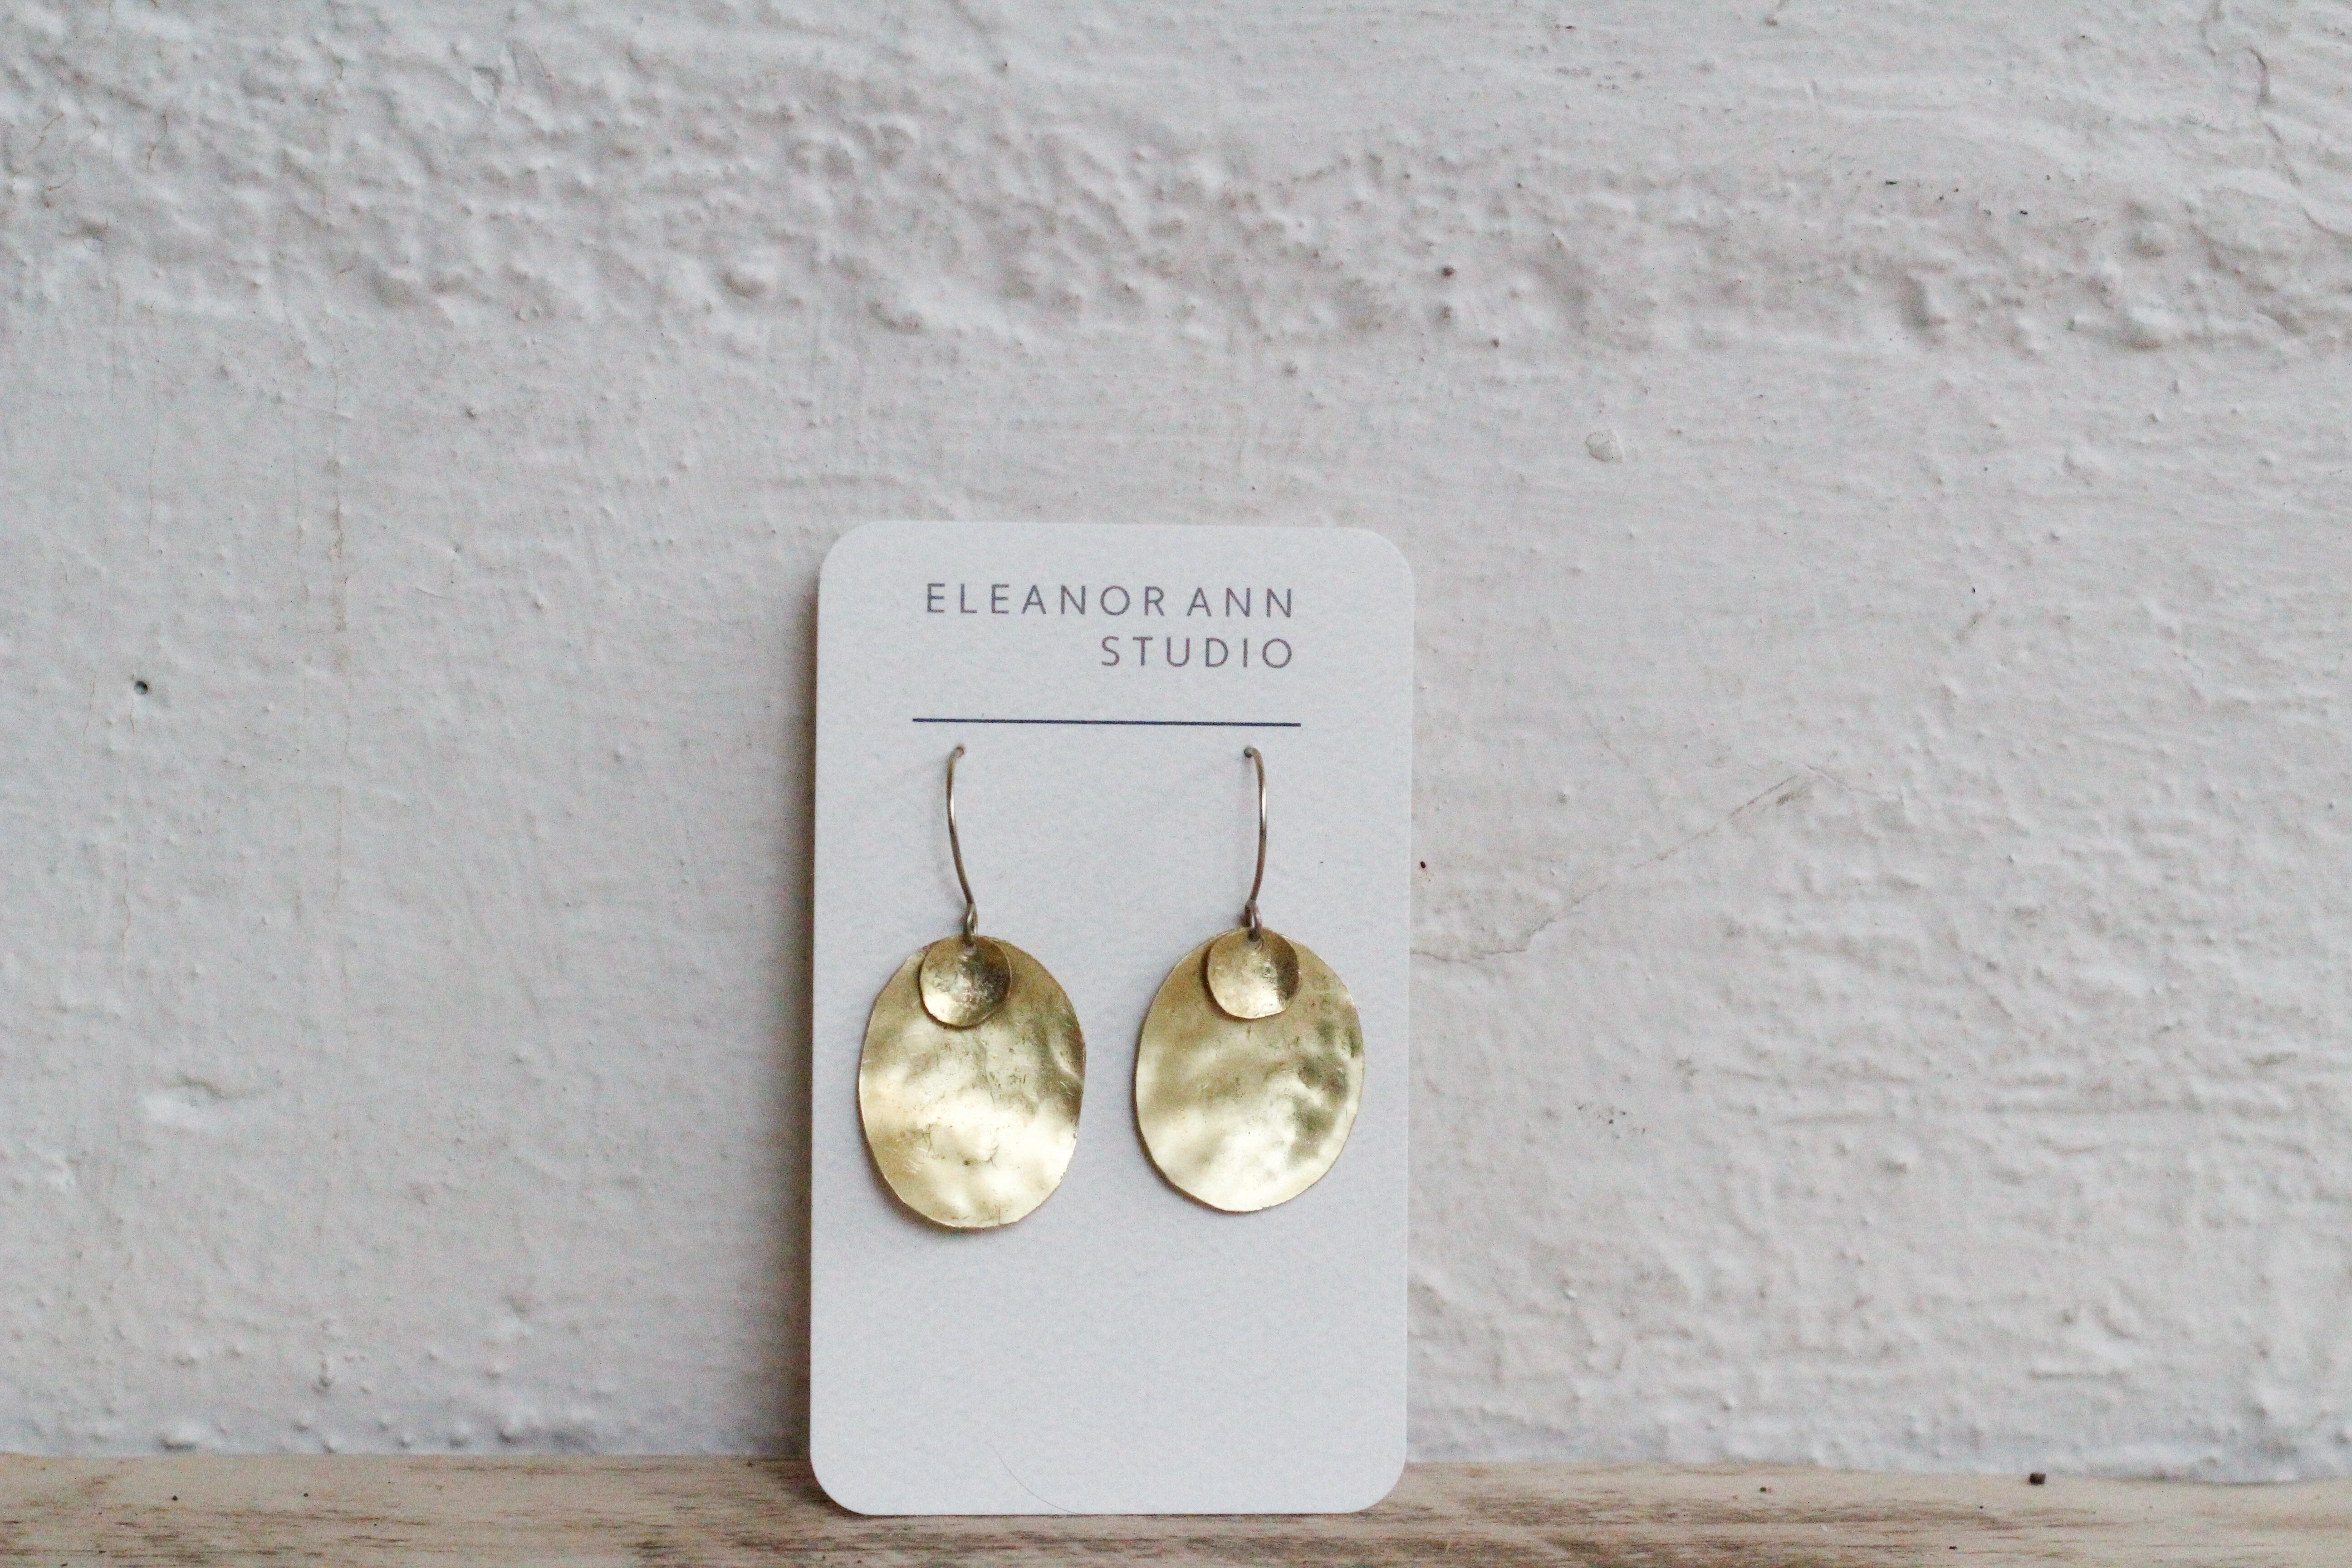 Recycled Copper & Brass Earrings - Eleanor Ann Earrings Eleanor Ann Eclipse Dangles - Brass Brass Hooks 